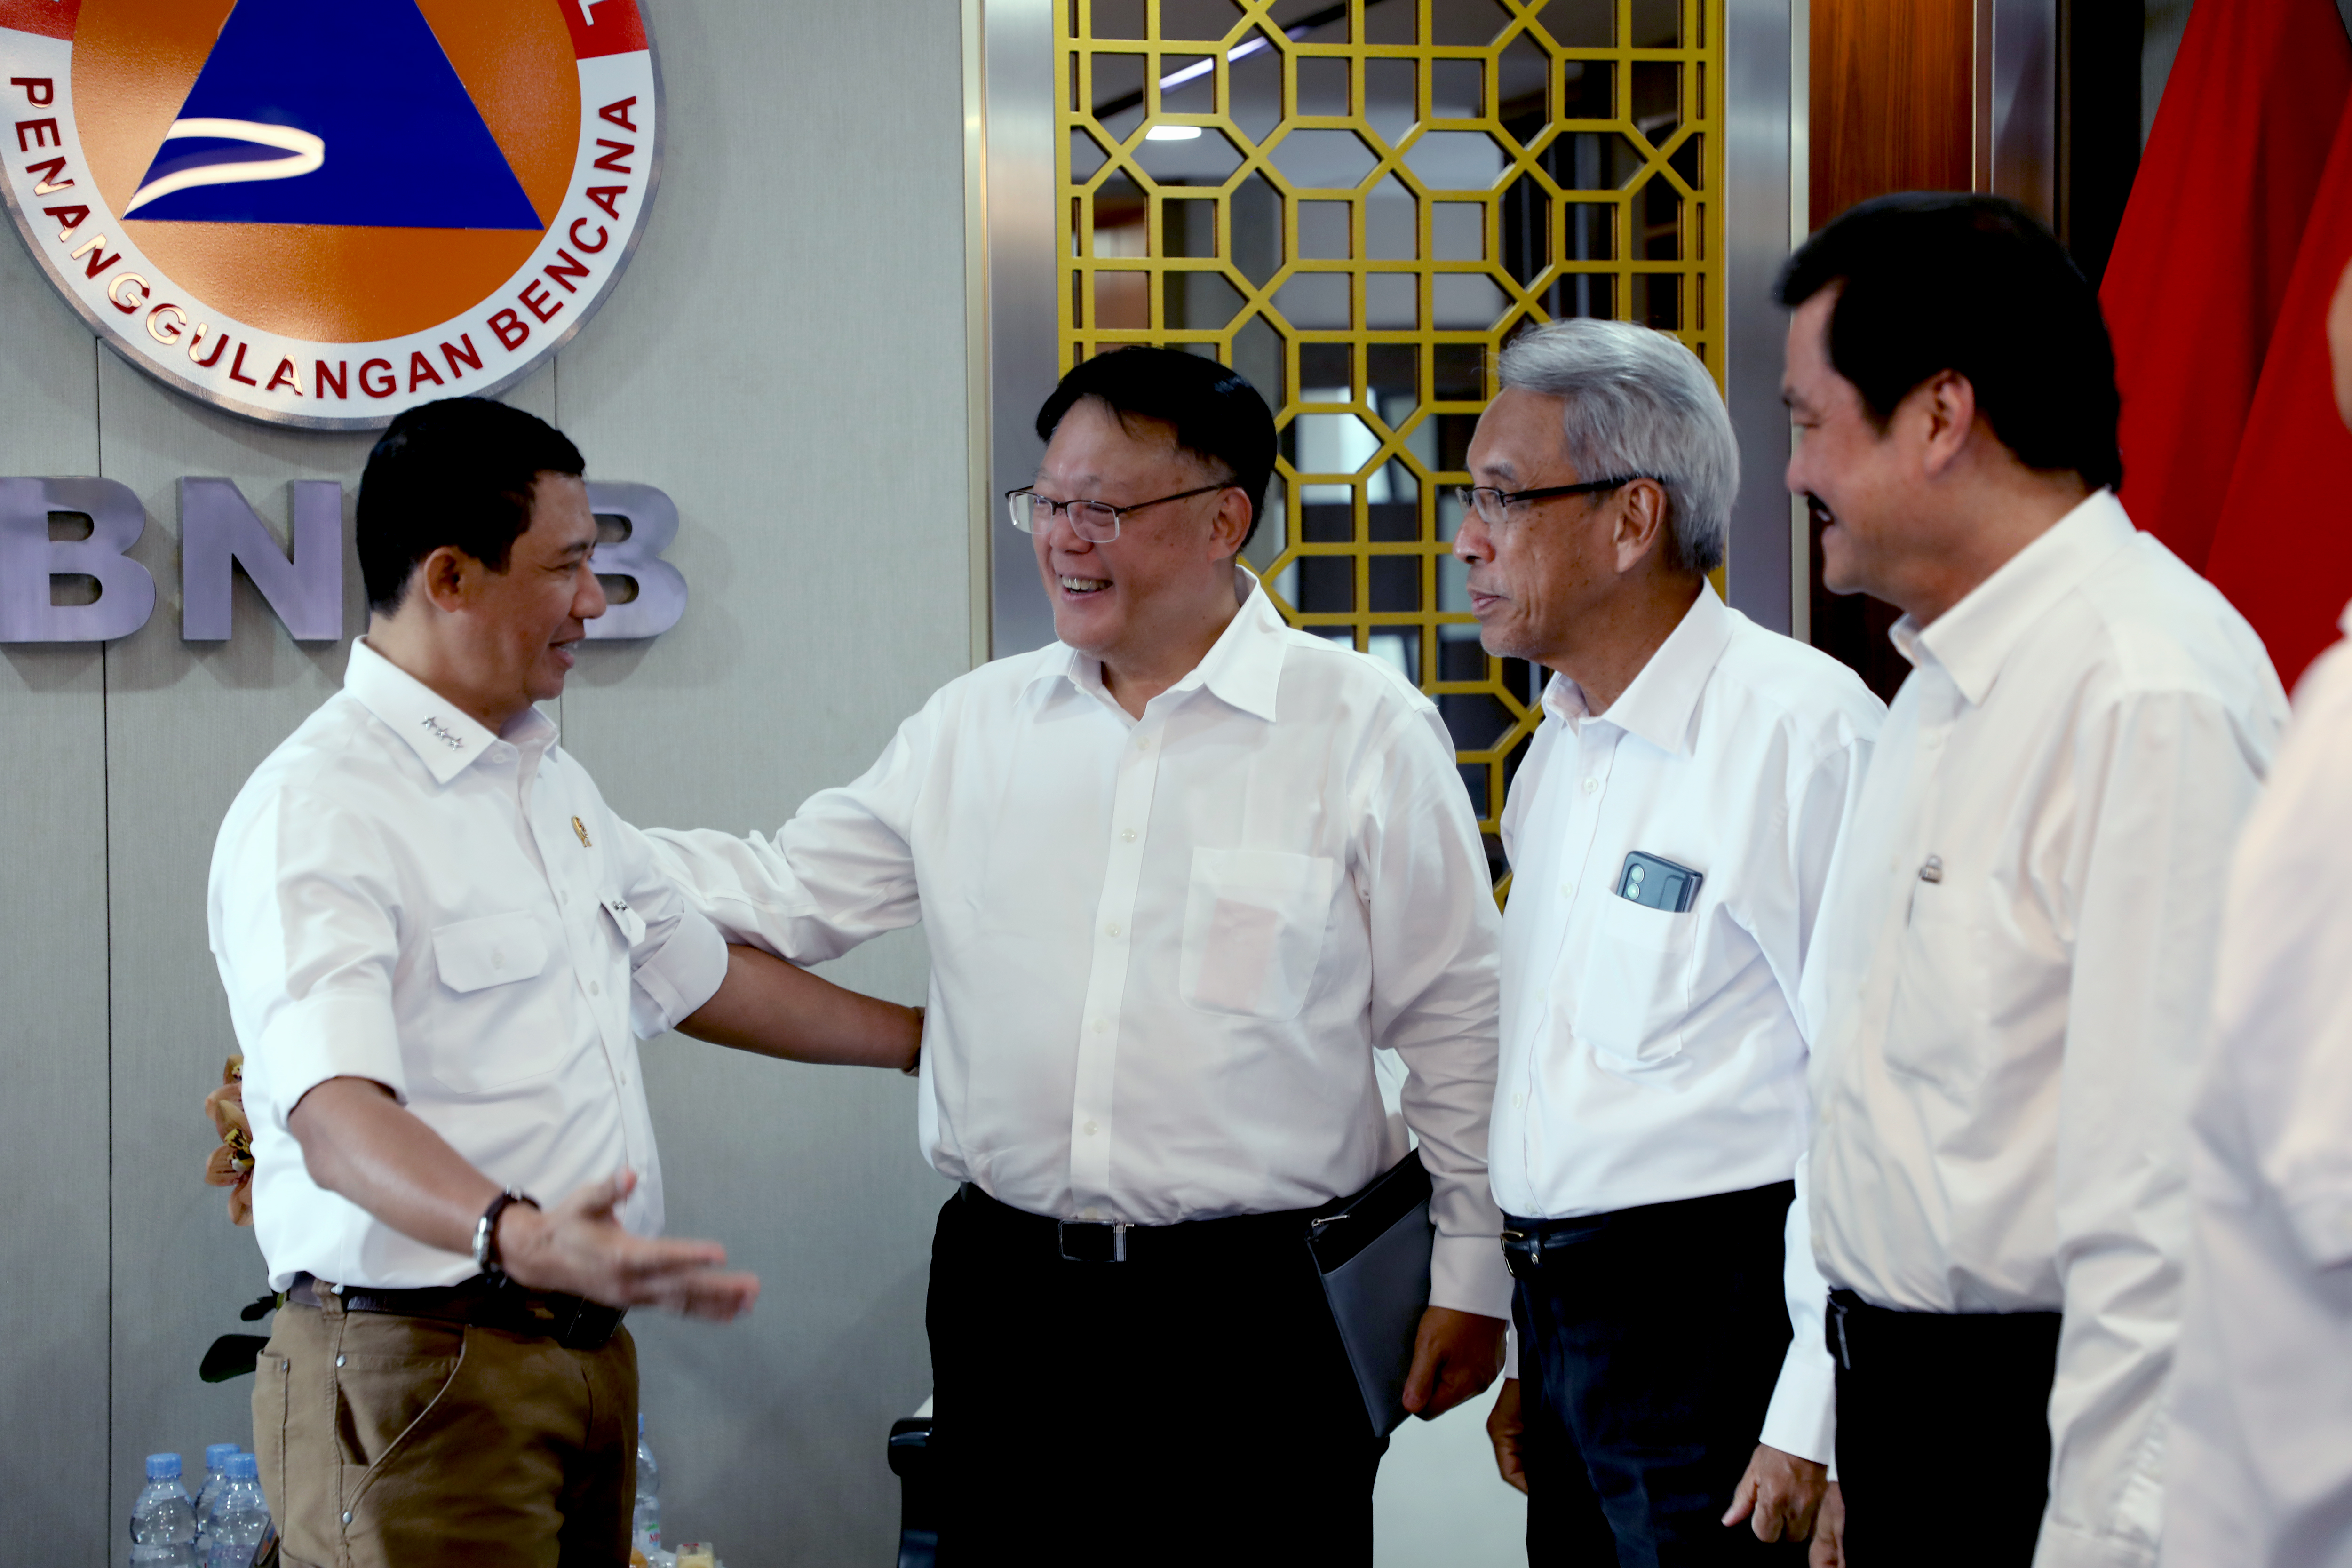 Kepala Badan Nasional Penanggulangan Bencana Letjen TNI Suharyanto, S.Sos., M.M. menerima kunjungan dari Dexa Group di Graha BNPB, Jakarta, Selasa (29/8). 